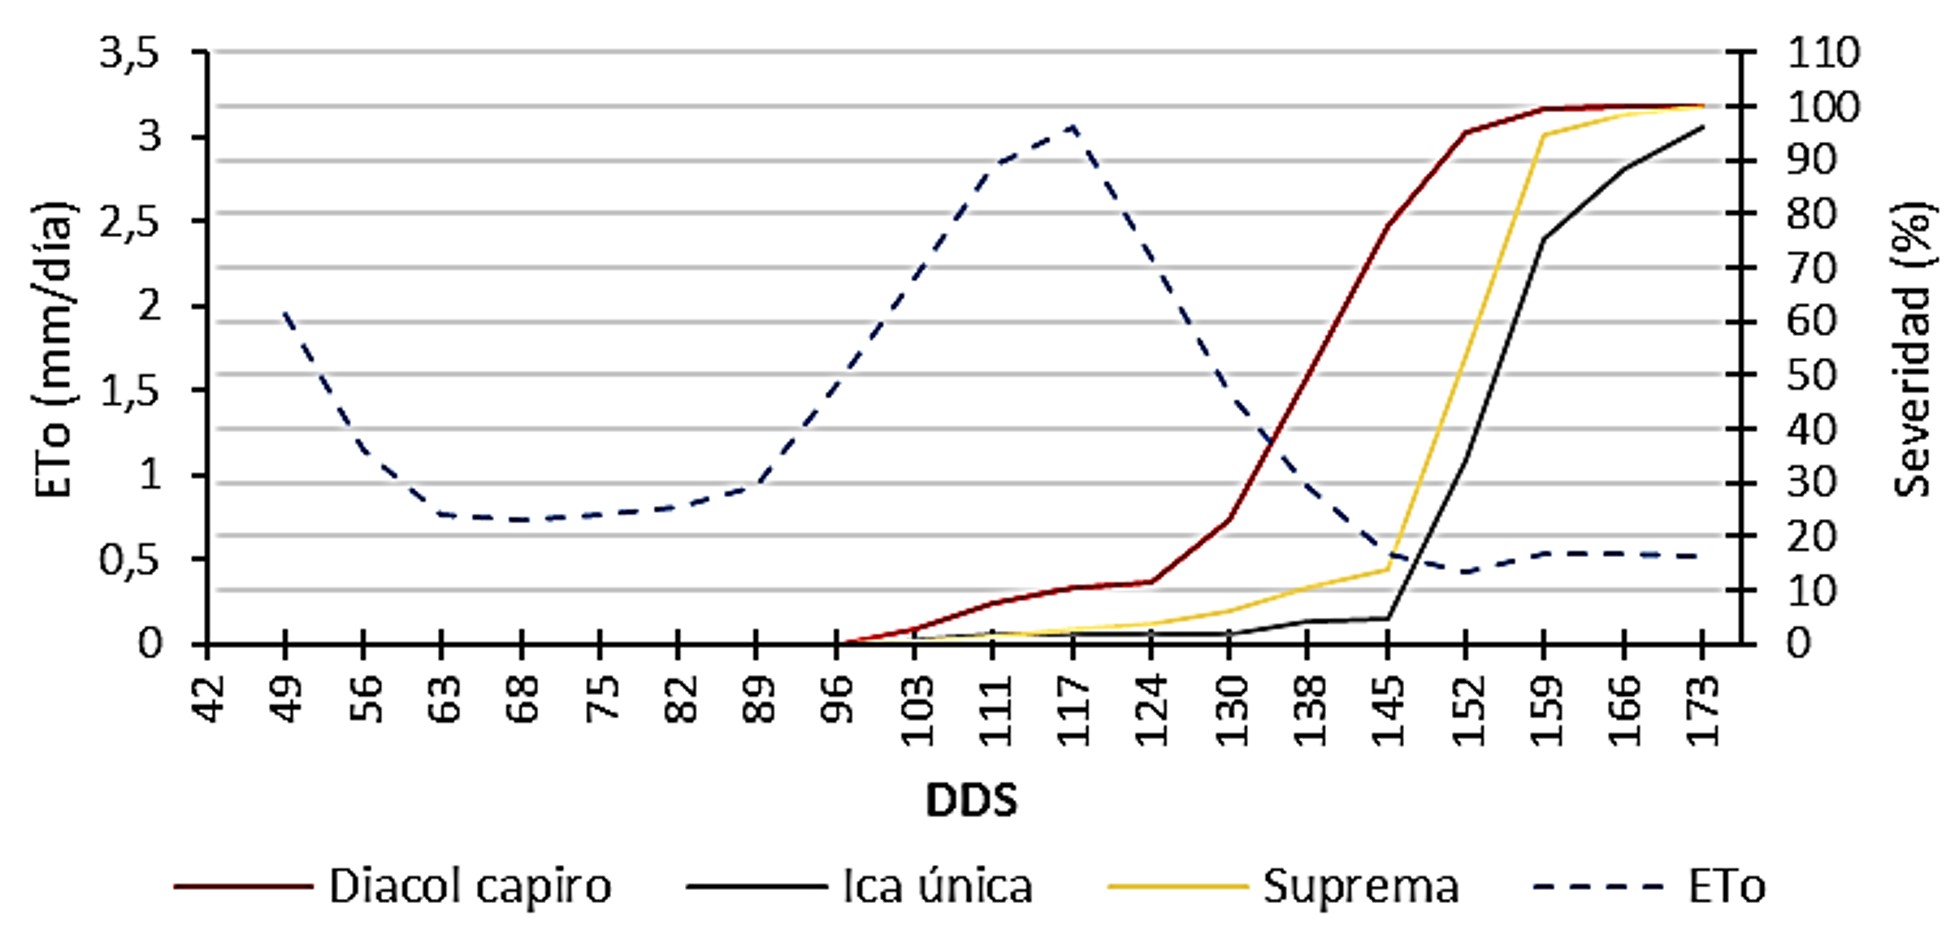 Relación de la severidad del tizón tardío (P. infestans) y la humedad relativa en tres variedades de papa durante los meses de diciembre 2015 a mayo 2016 en un ciclo de cultivo (173 días después de siembra - dds).